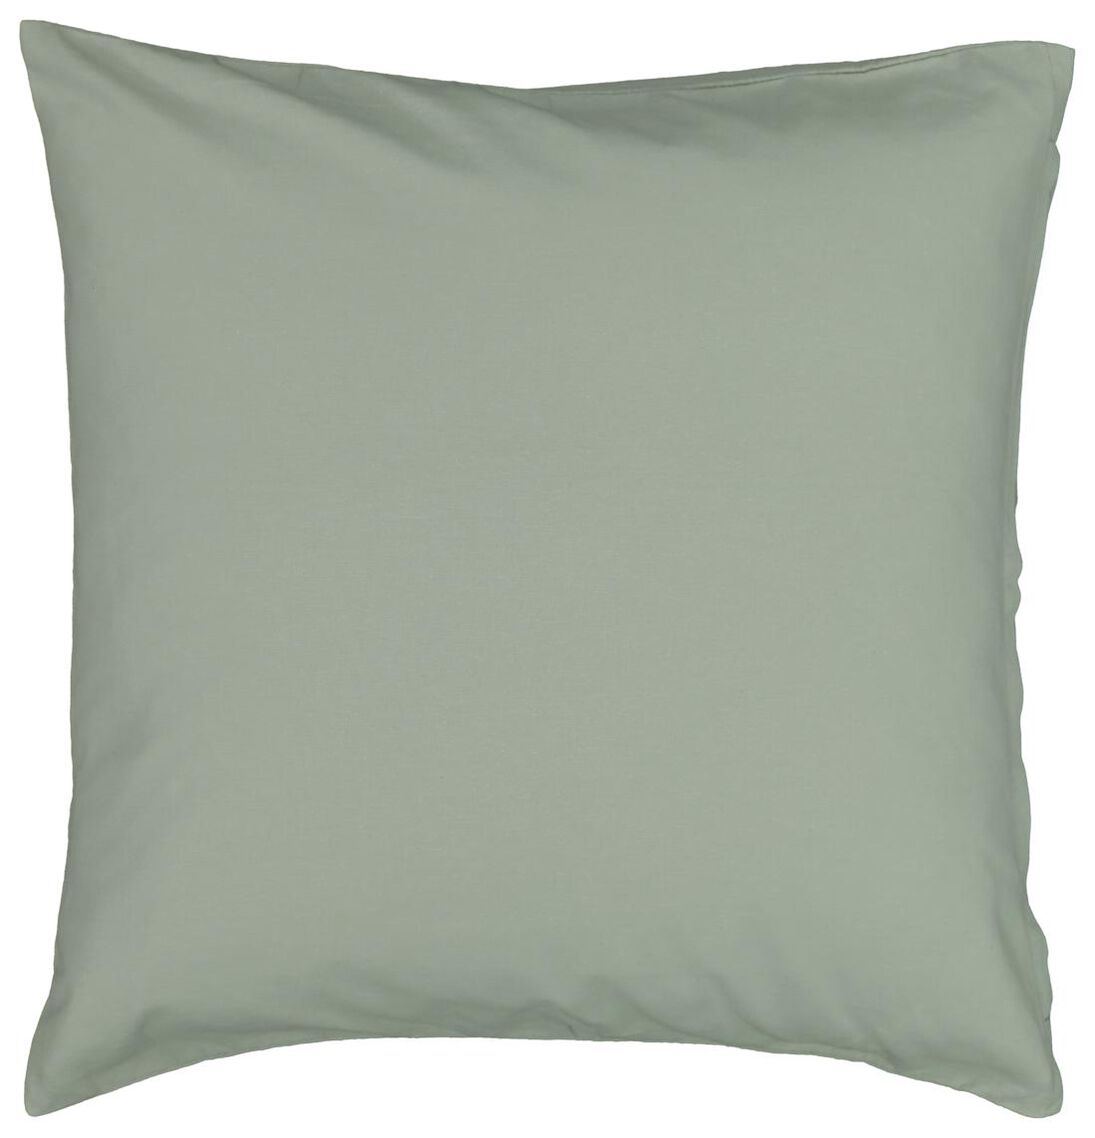 cushion cover - 50x50 - textured - green - HEMA